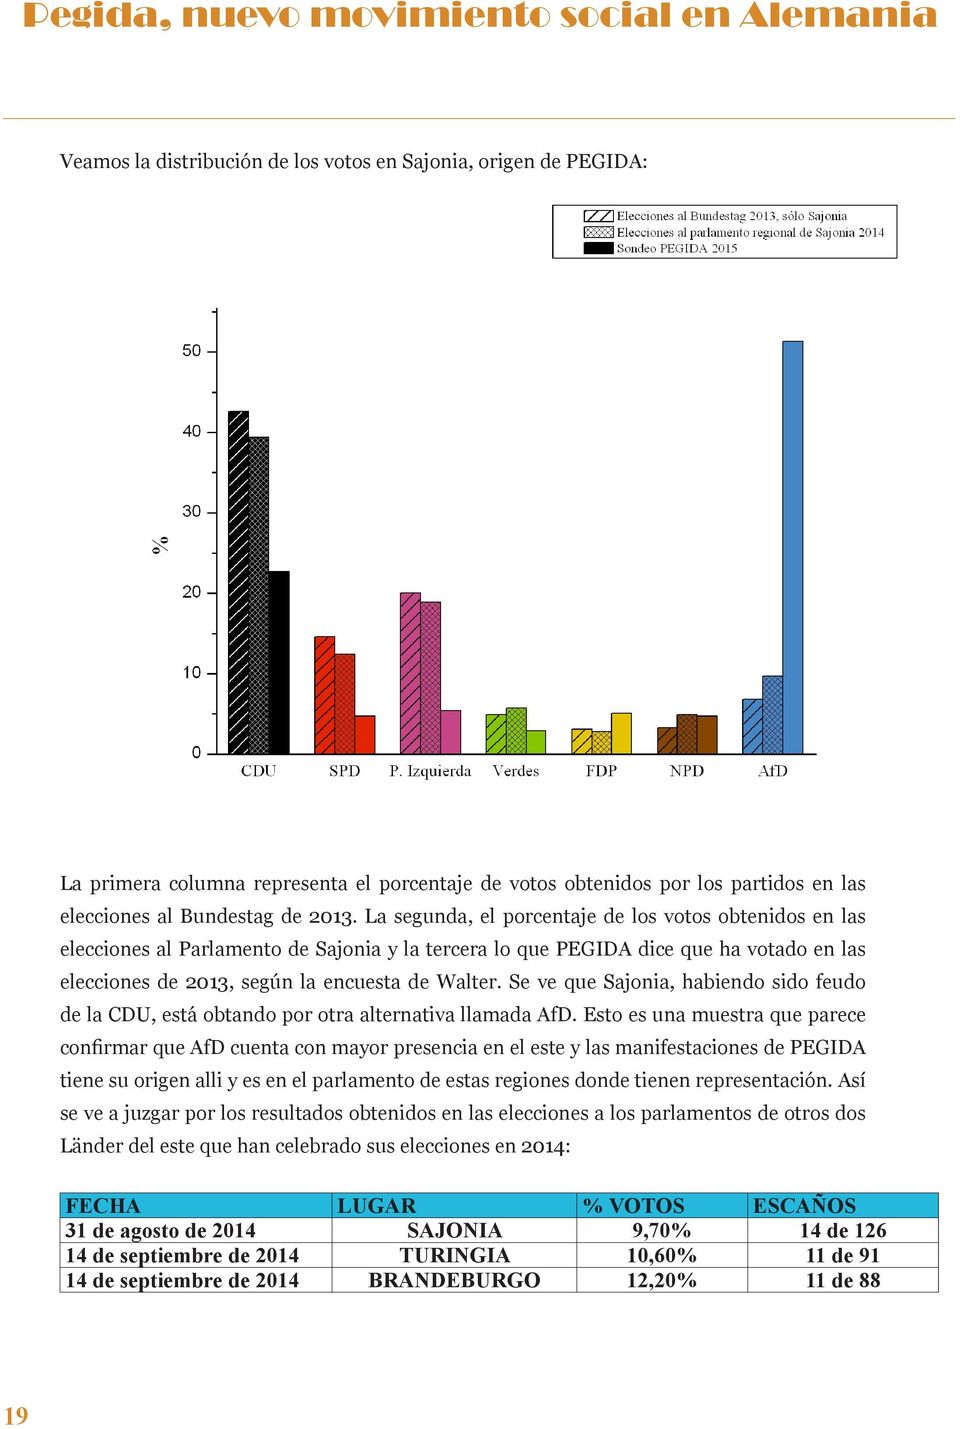 La segunda, el porcentaje de los votos obtenidos en las elecciones al Parlamento de Sajonia y la tercera lo que PEGIDA dice que ha votado en las elecciones de 2013, según la encuesta de Walter.